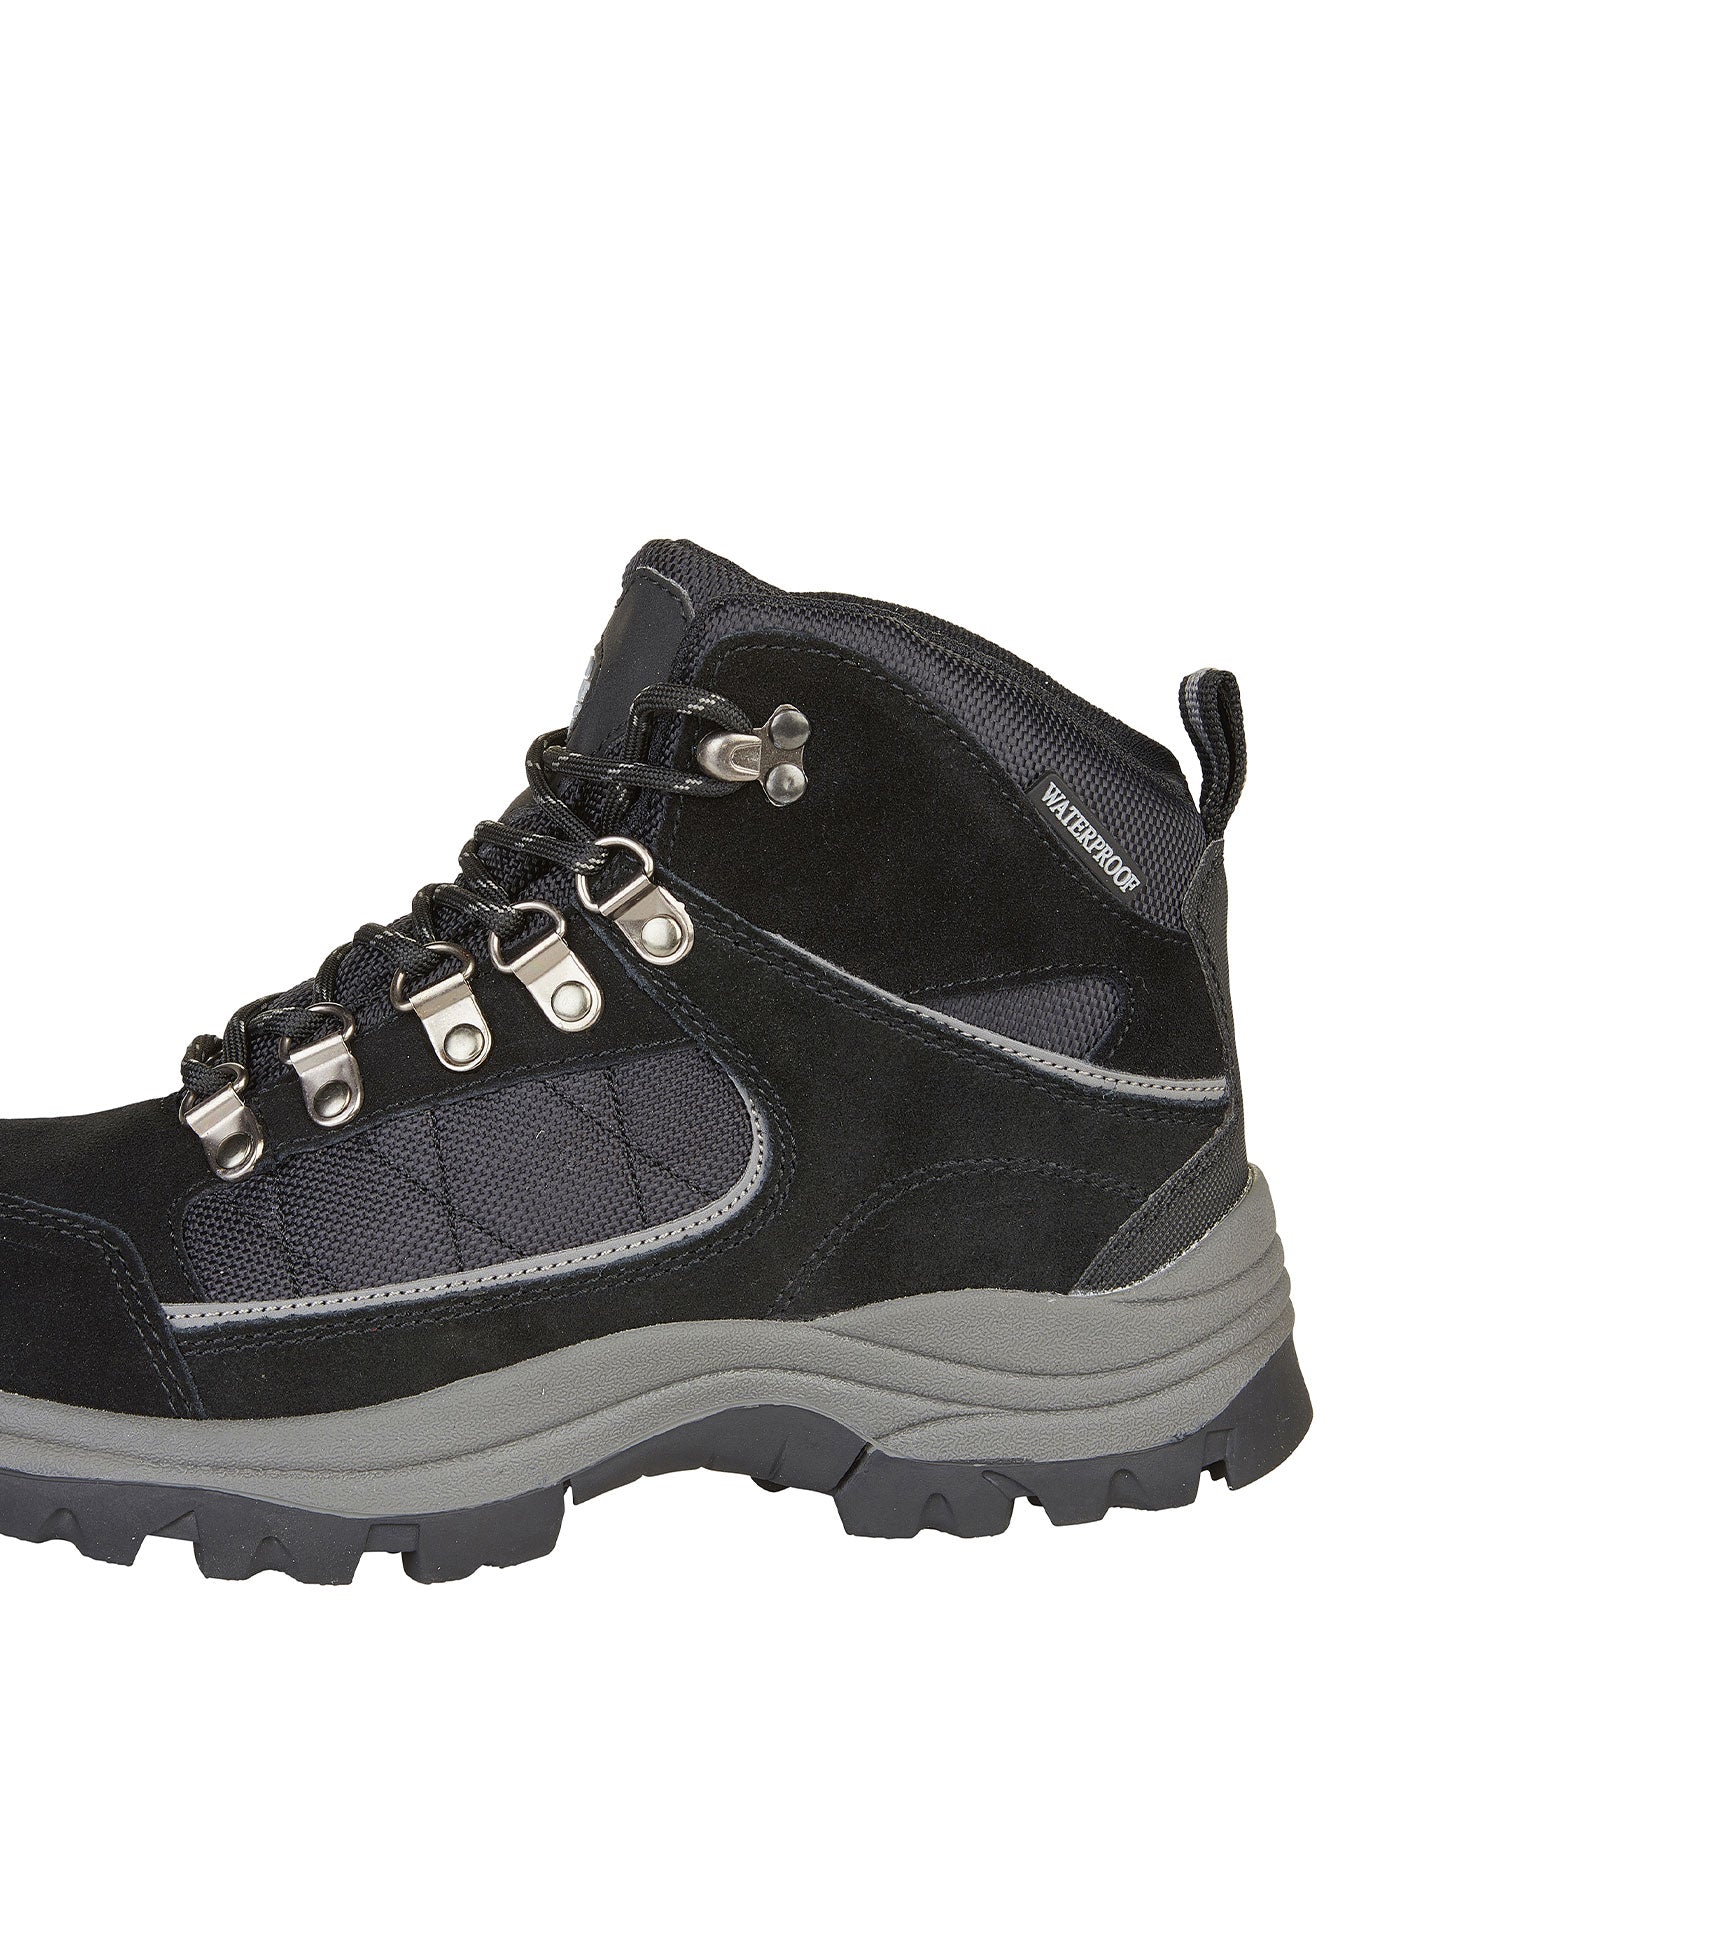 Women's Suede Leather Waterproof Walking Boots